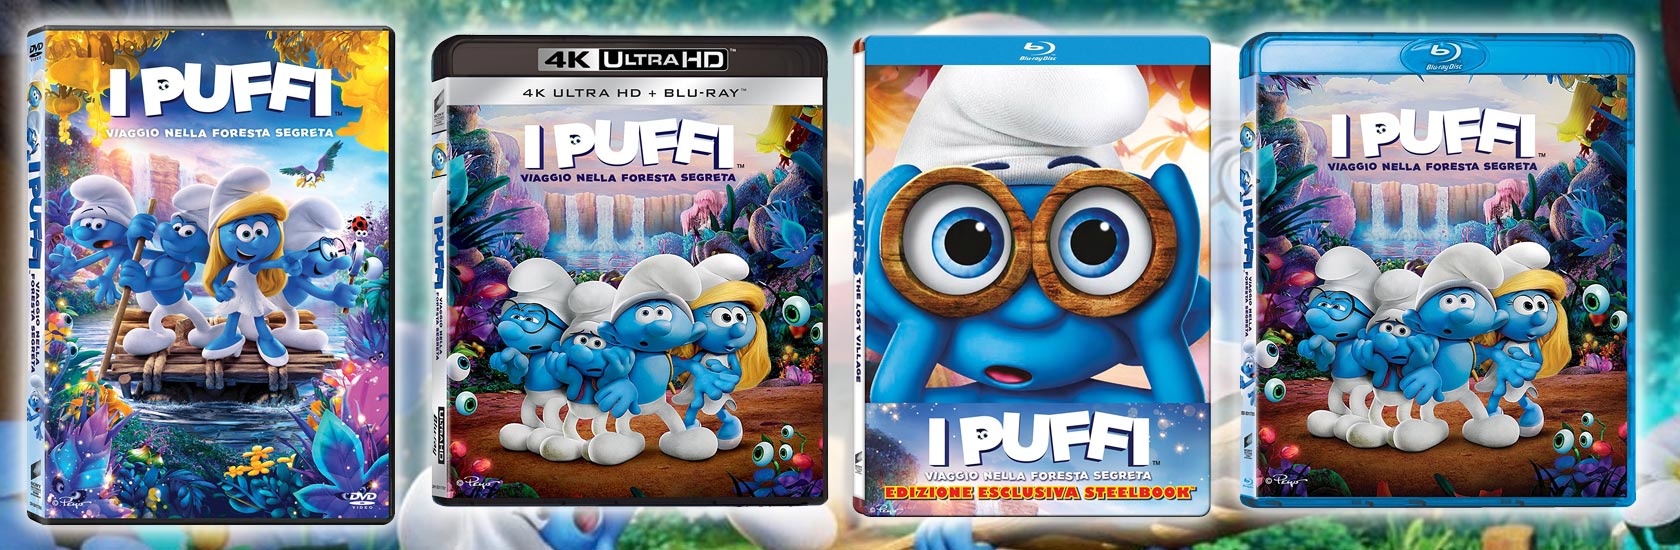 I Puffi: Viaggio nella foresta segreta in DVD, Blu-ray, 4k Ultra HD